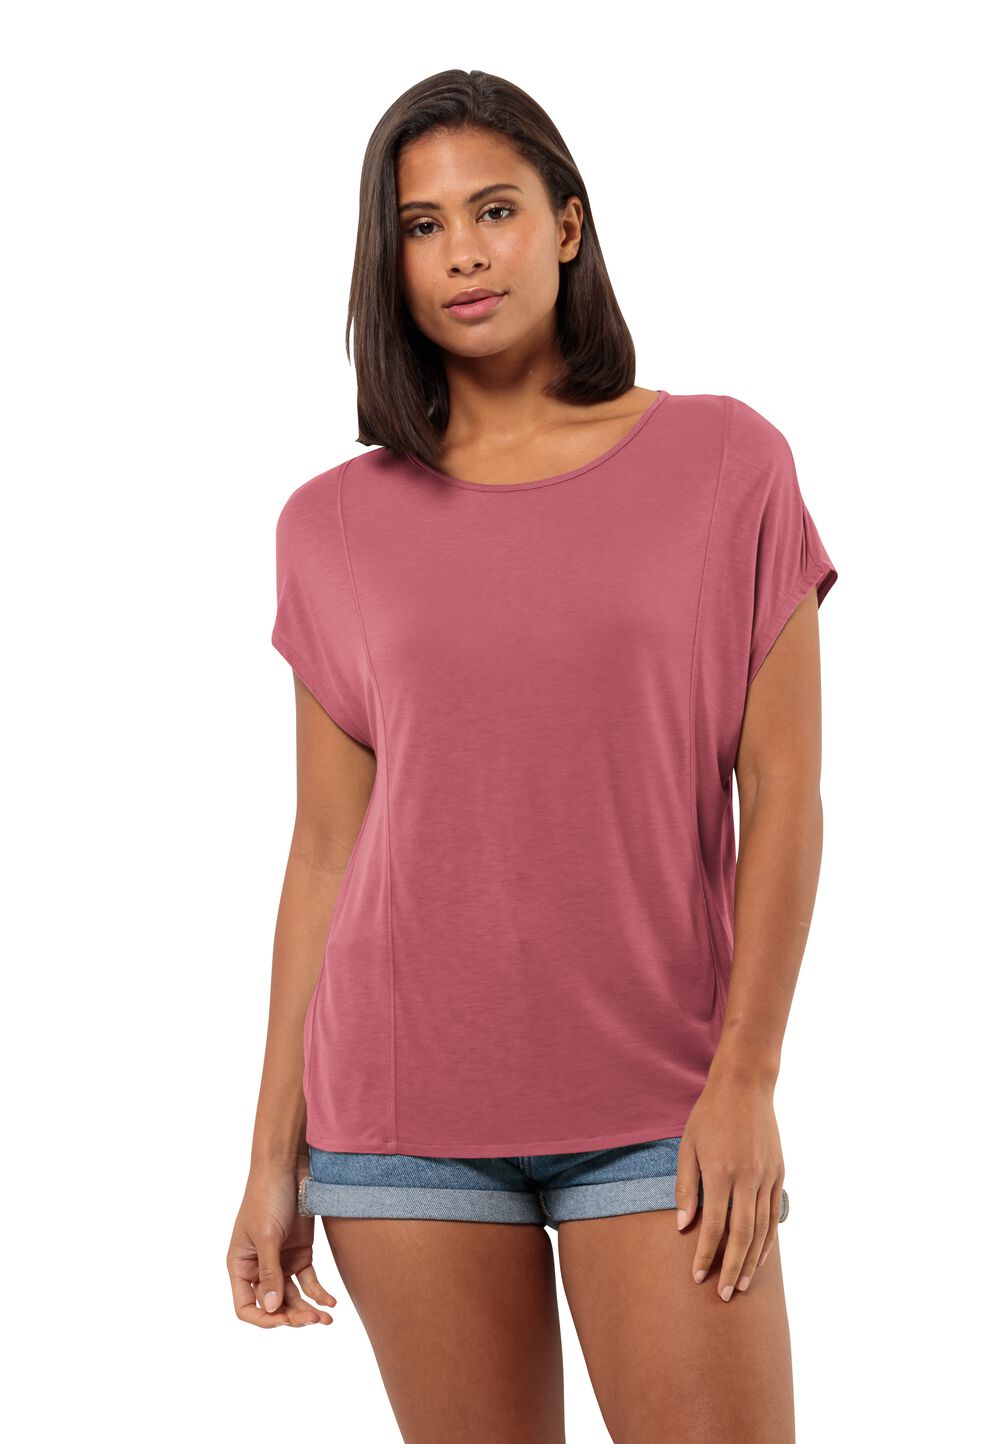 Jack Wolfskin Mola T-Shirt Women T-shirt Dames L soft pink soft pink